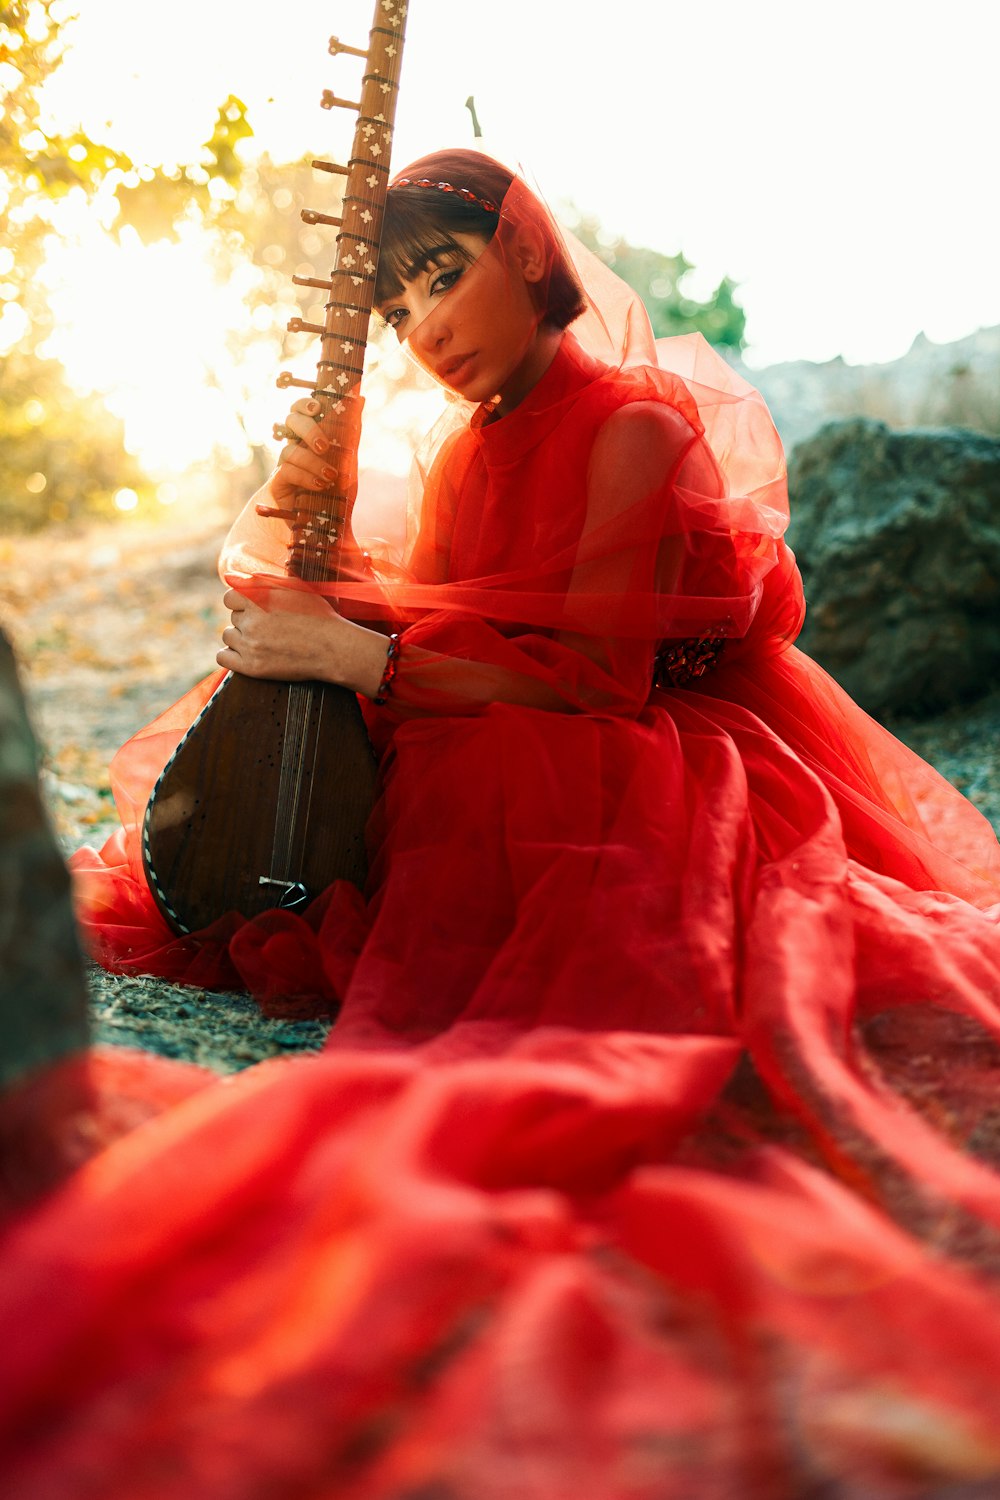 빨간 드레스를 입은 여자가 기타를 들고 있다